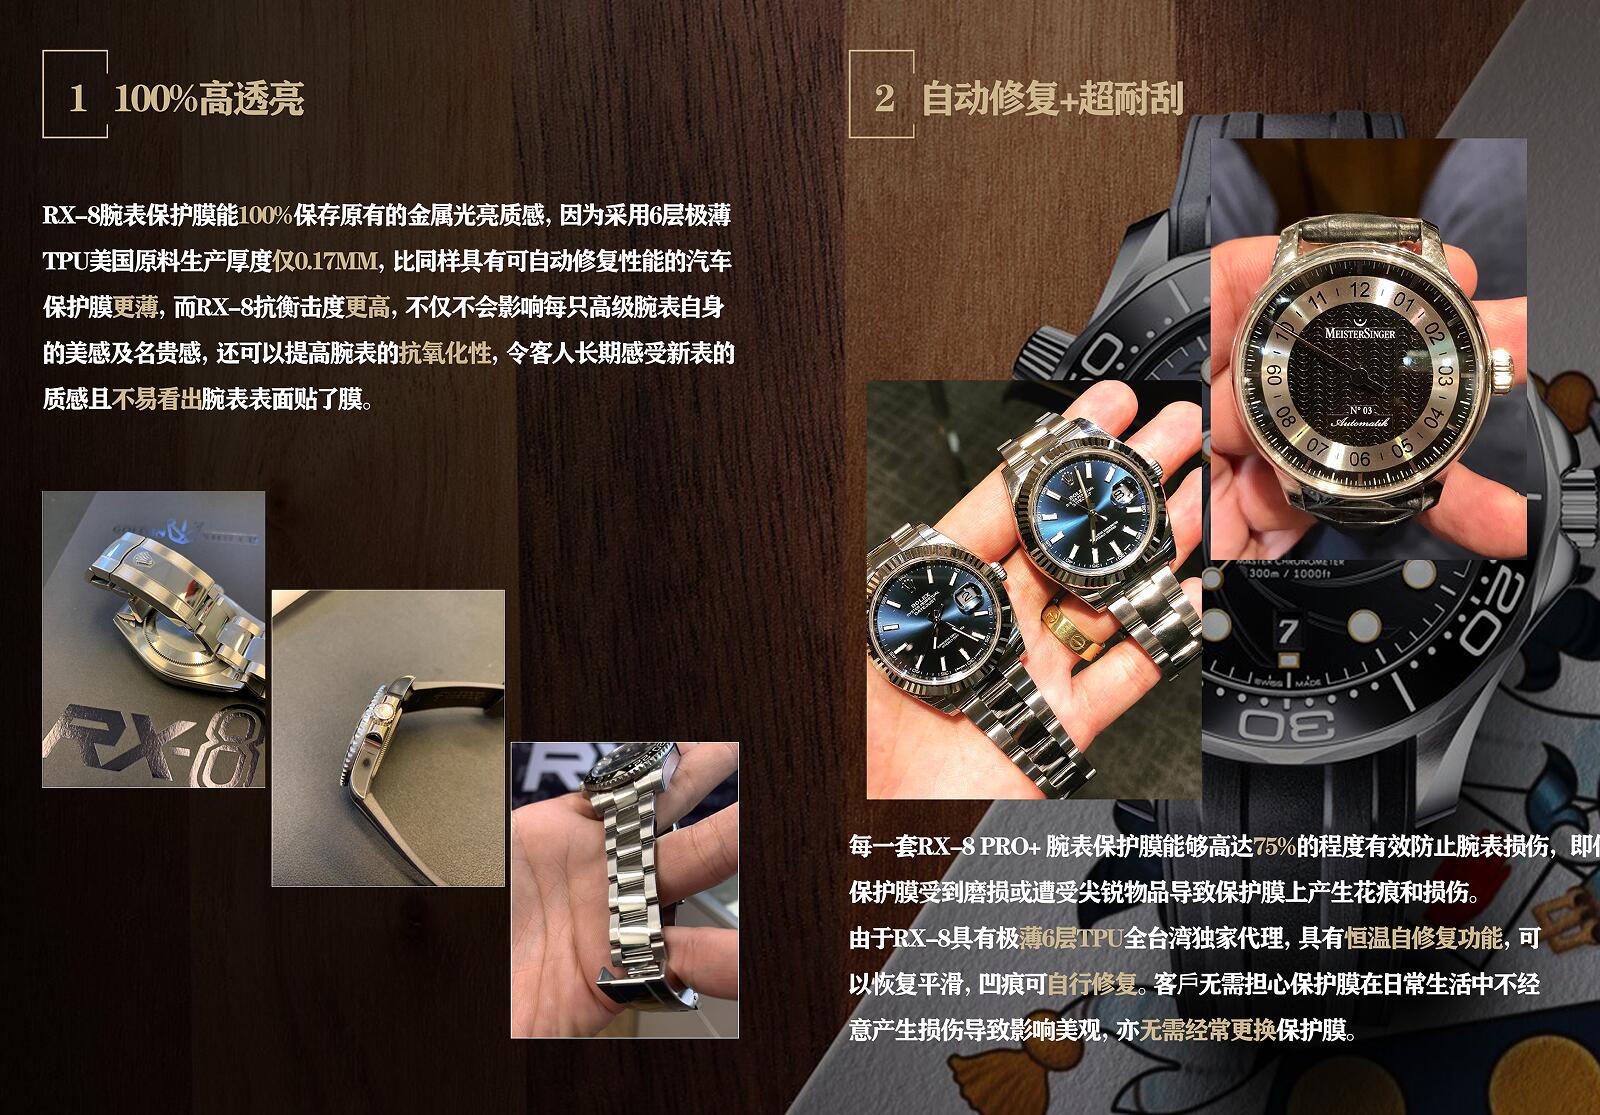 RX-8手表贴膜适用于百达翡丽PP5968A 外表圈表盘表扣